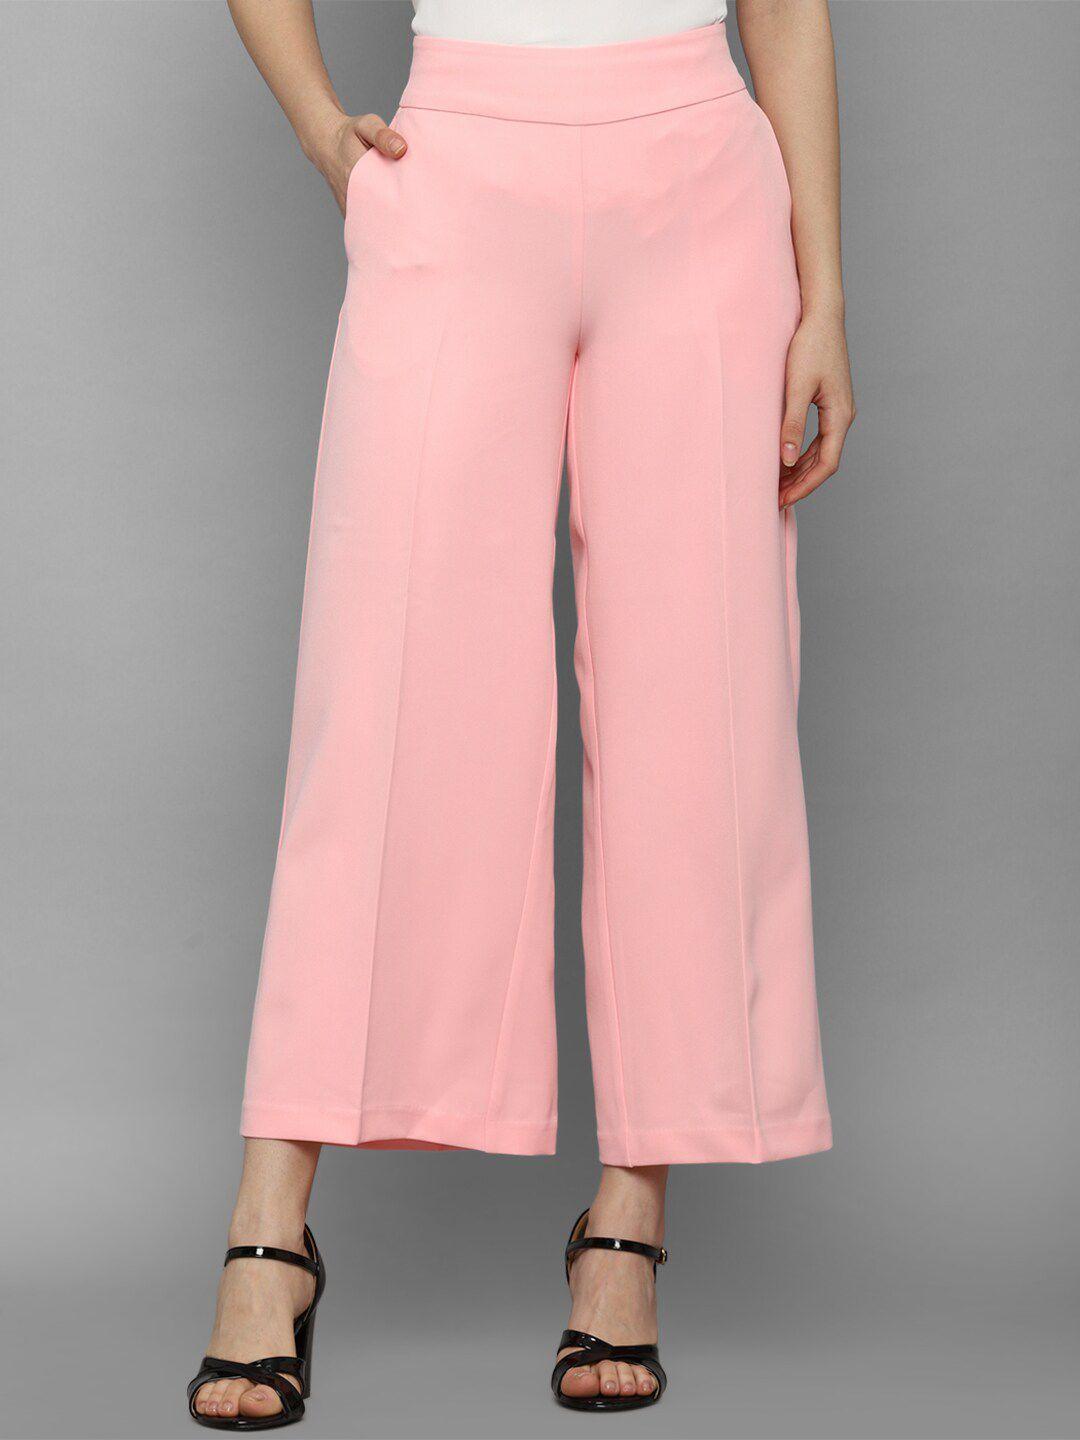 allen solly woman women pink trousers